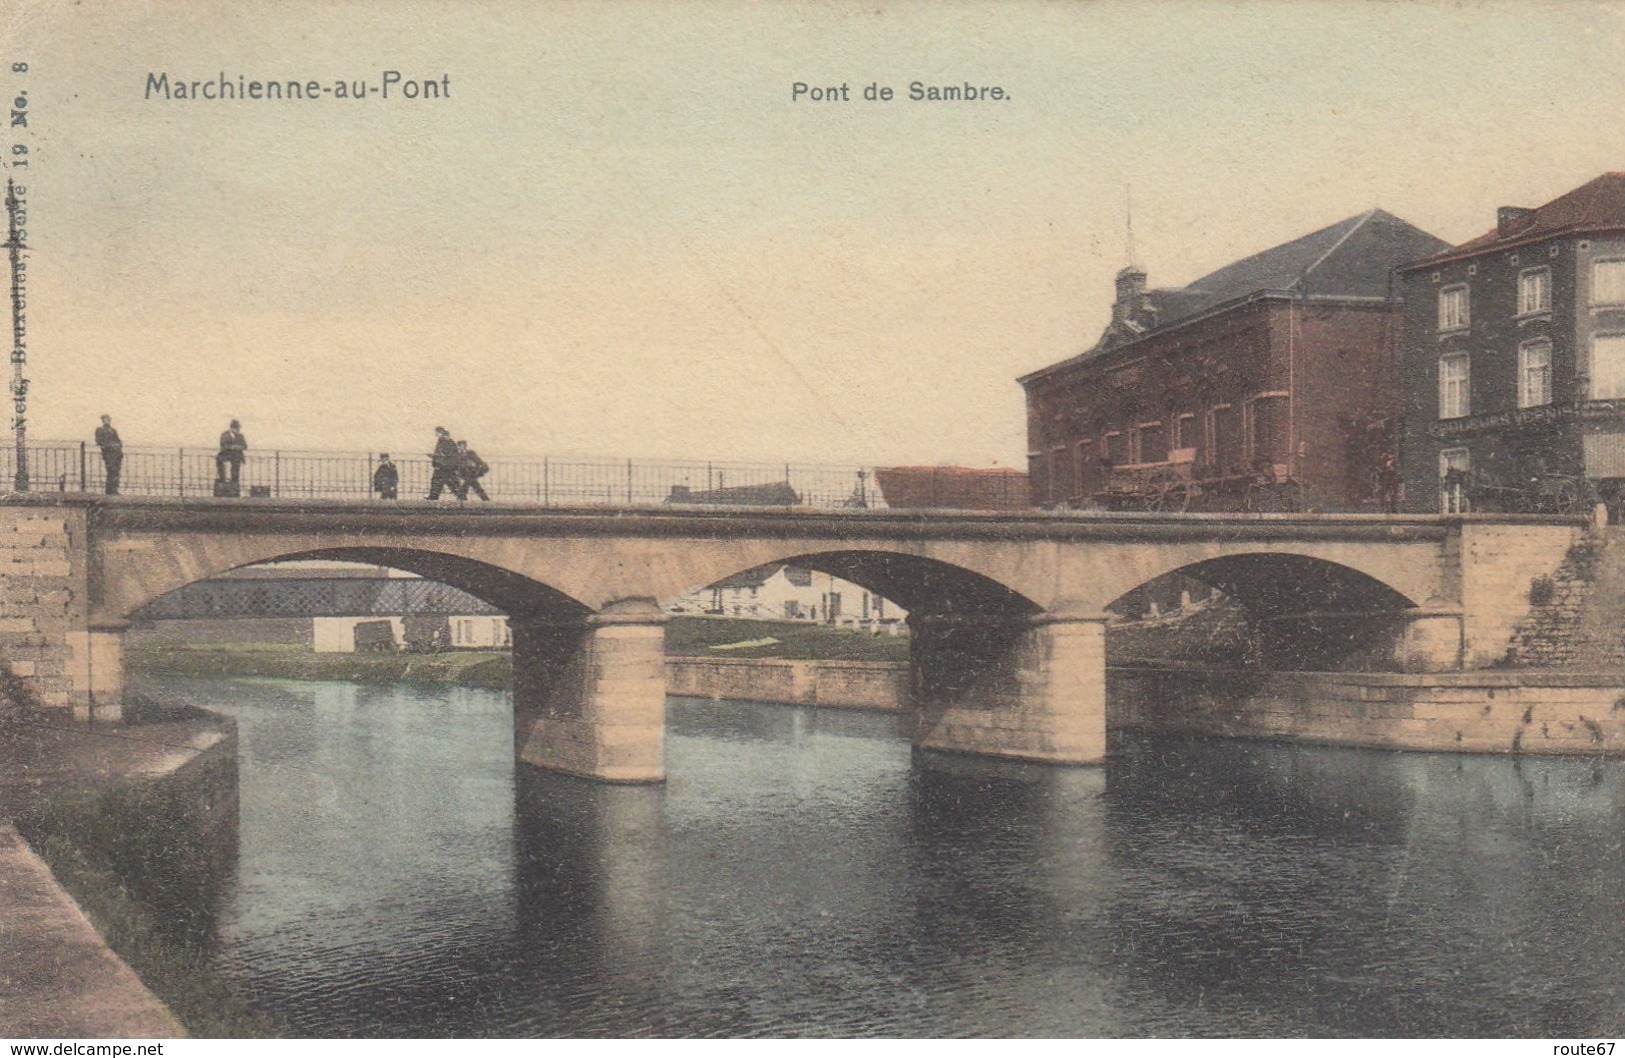 11 kaarten van Marchienne-au-Pont   TRAM